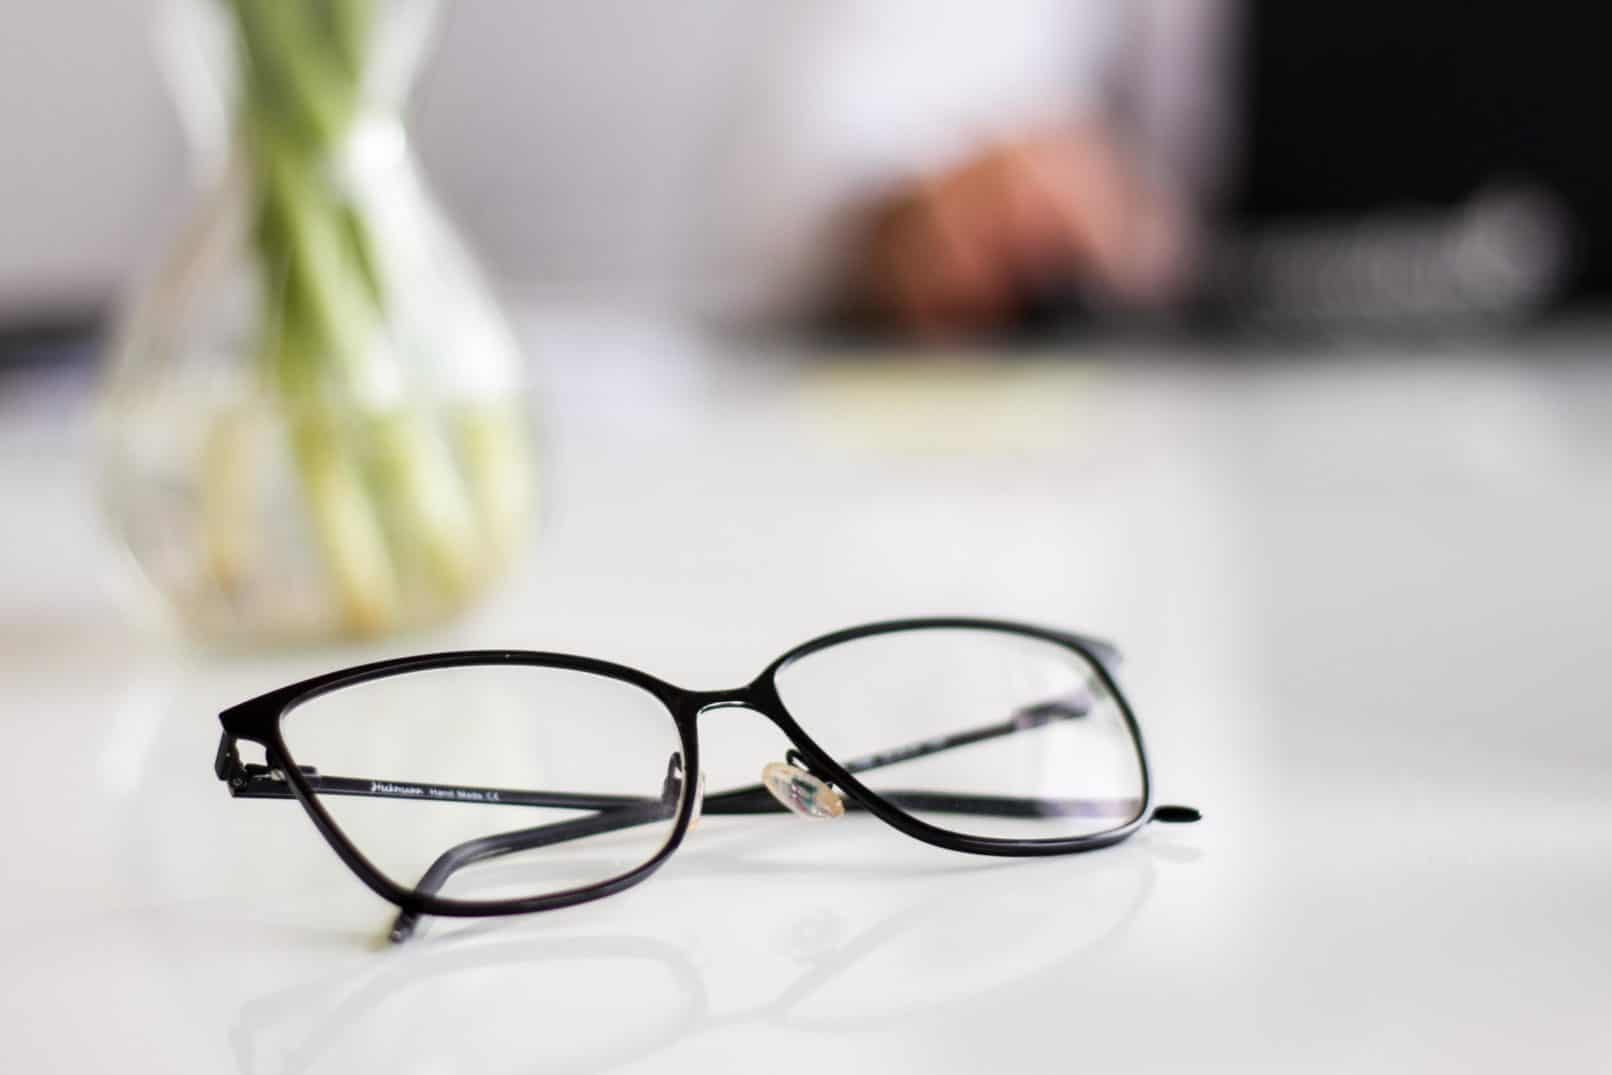 هل صحيح أن إزالة النظارات غالبًا يمكن أن تشفي العيون الناقصة؟ استمع إلى ما يقوله الطبيب